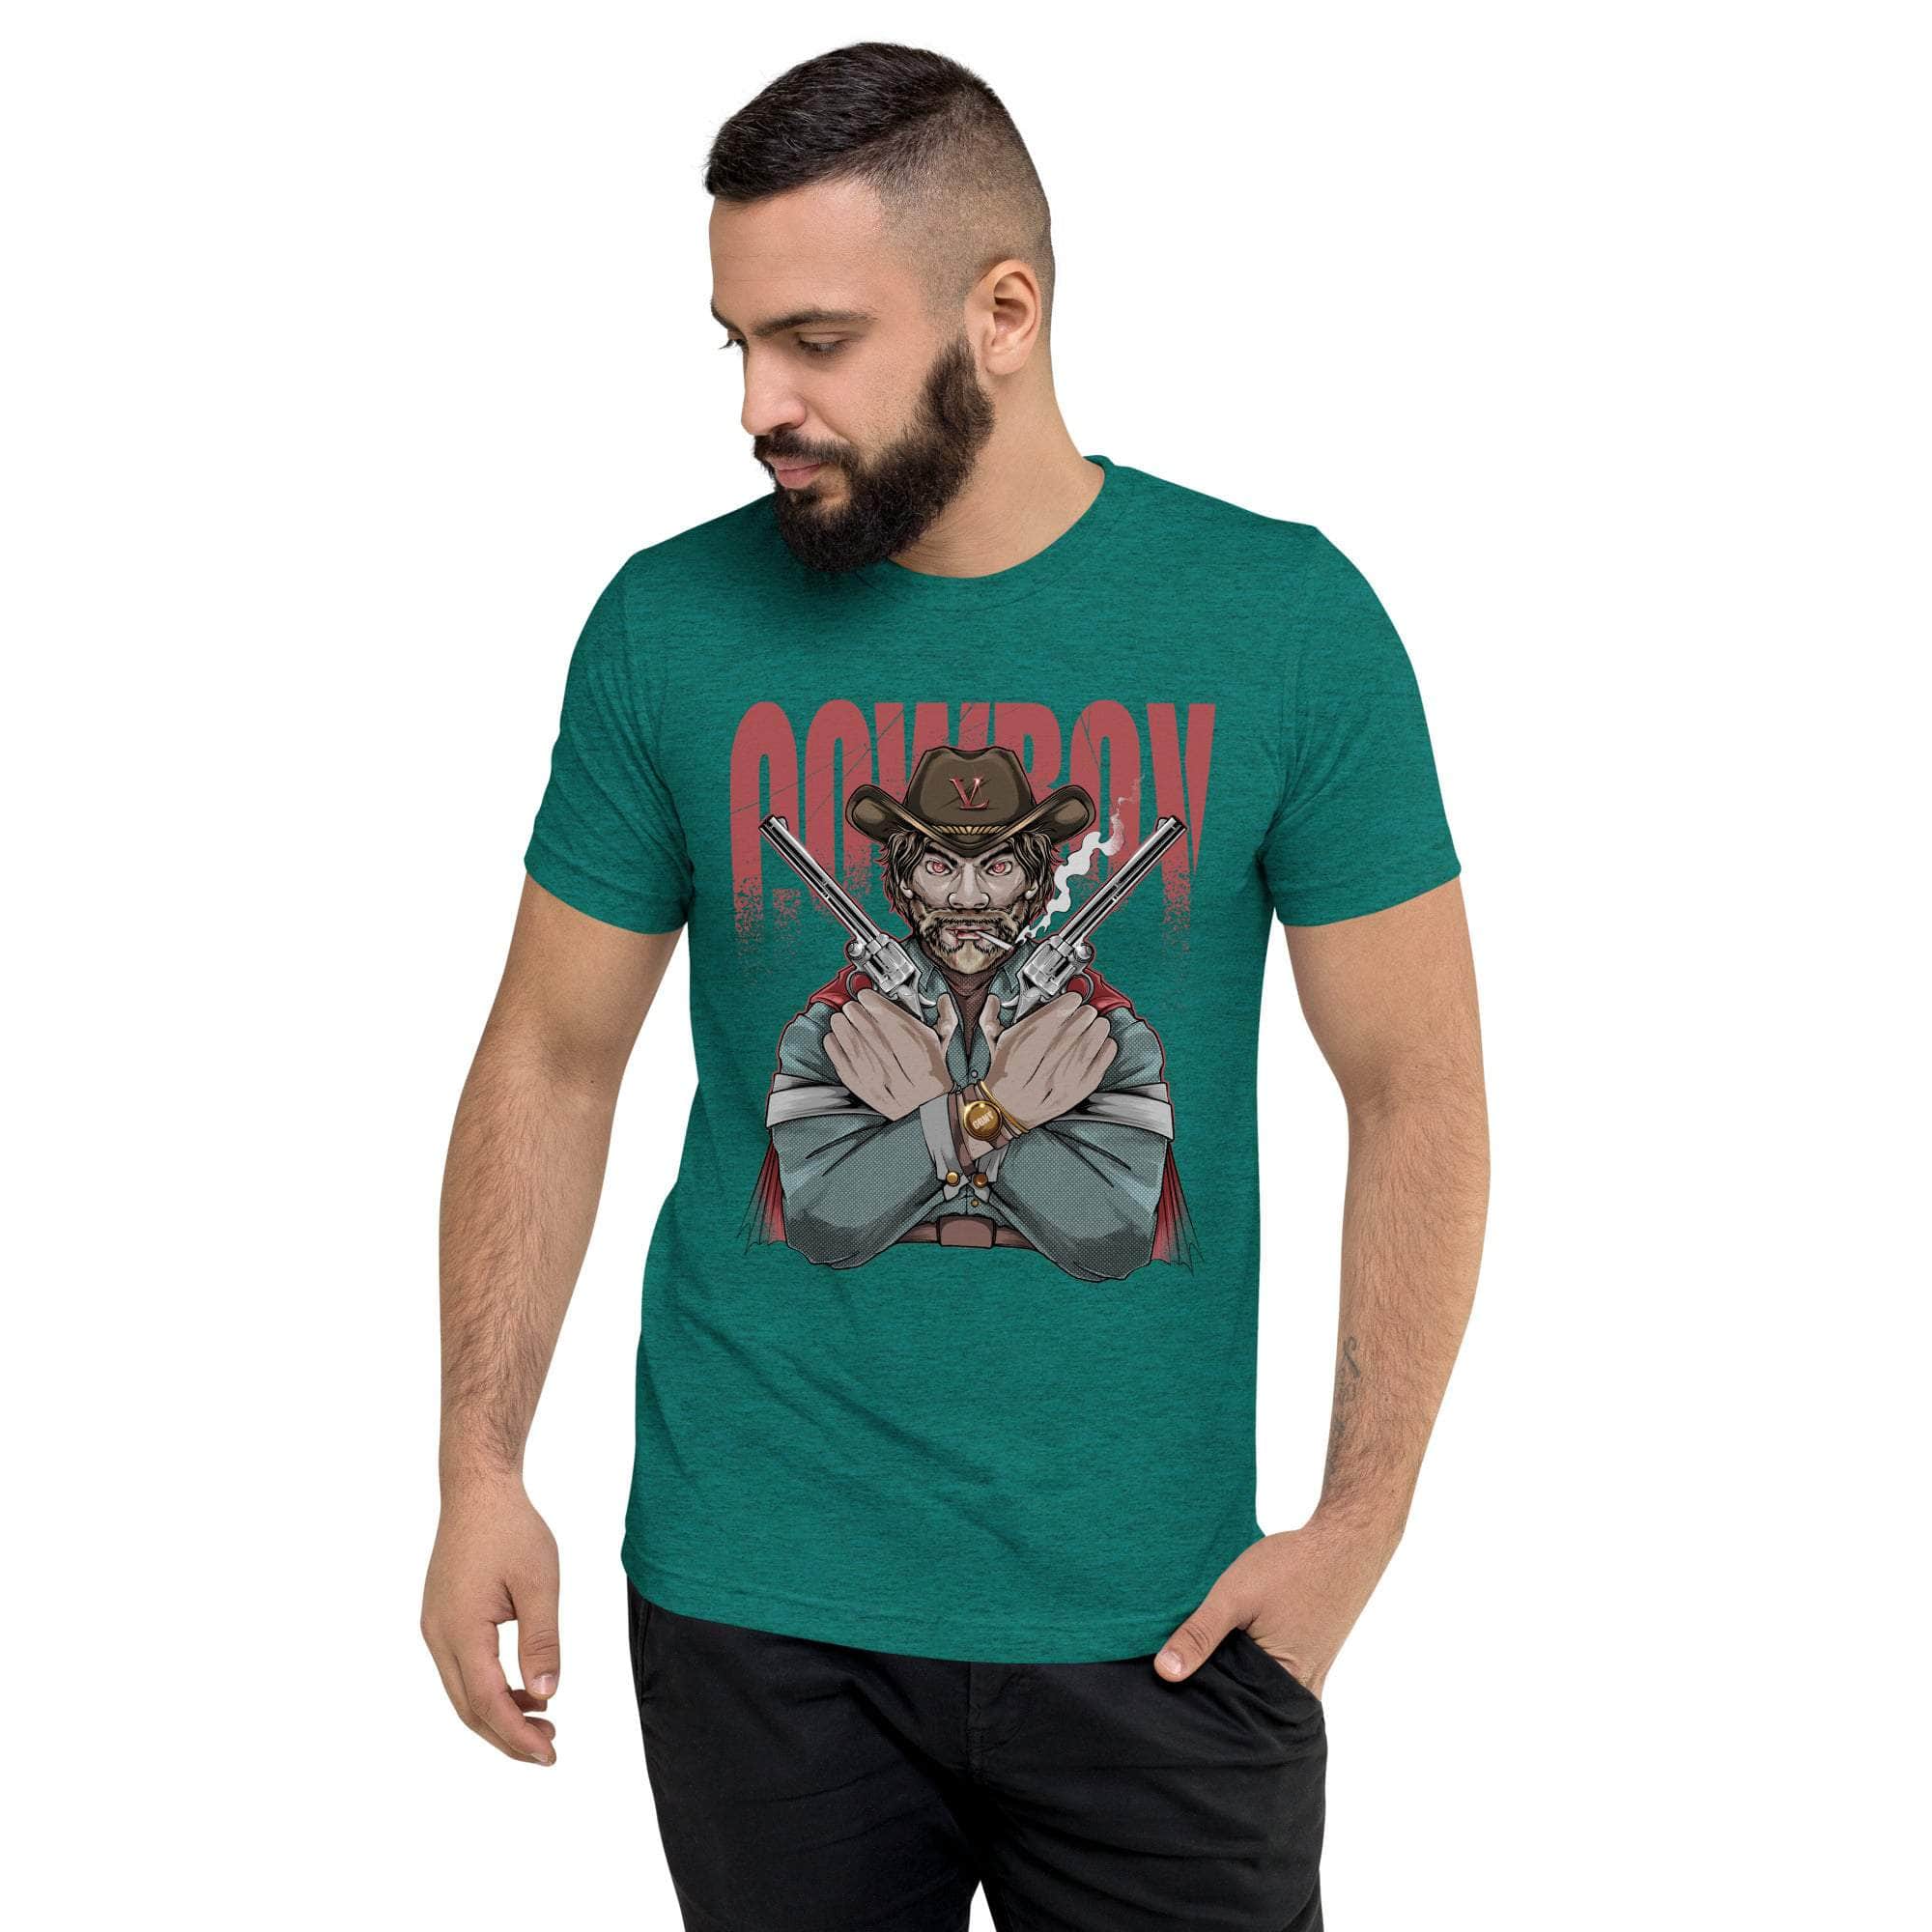 GBNY Teal Triblend / XS Vamp Life X GBNY "Cow Boy" T-shirt - Men's 2714713_6592